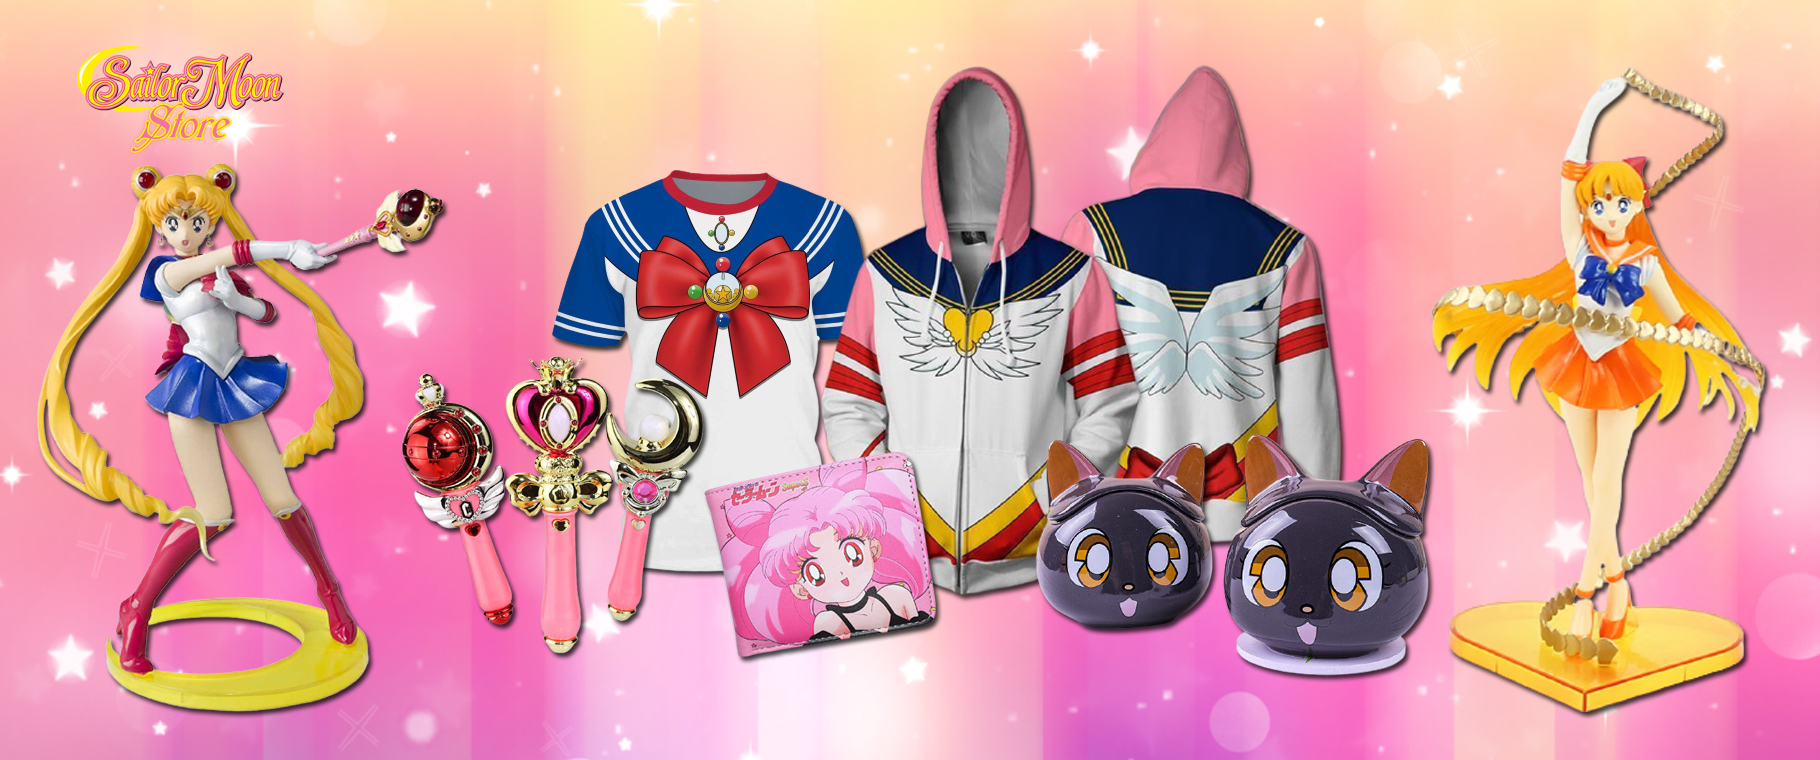 Sailor Moon Store - OFFICIAL Sailor Moon Merch